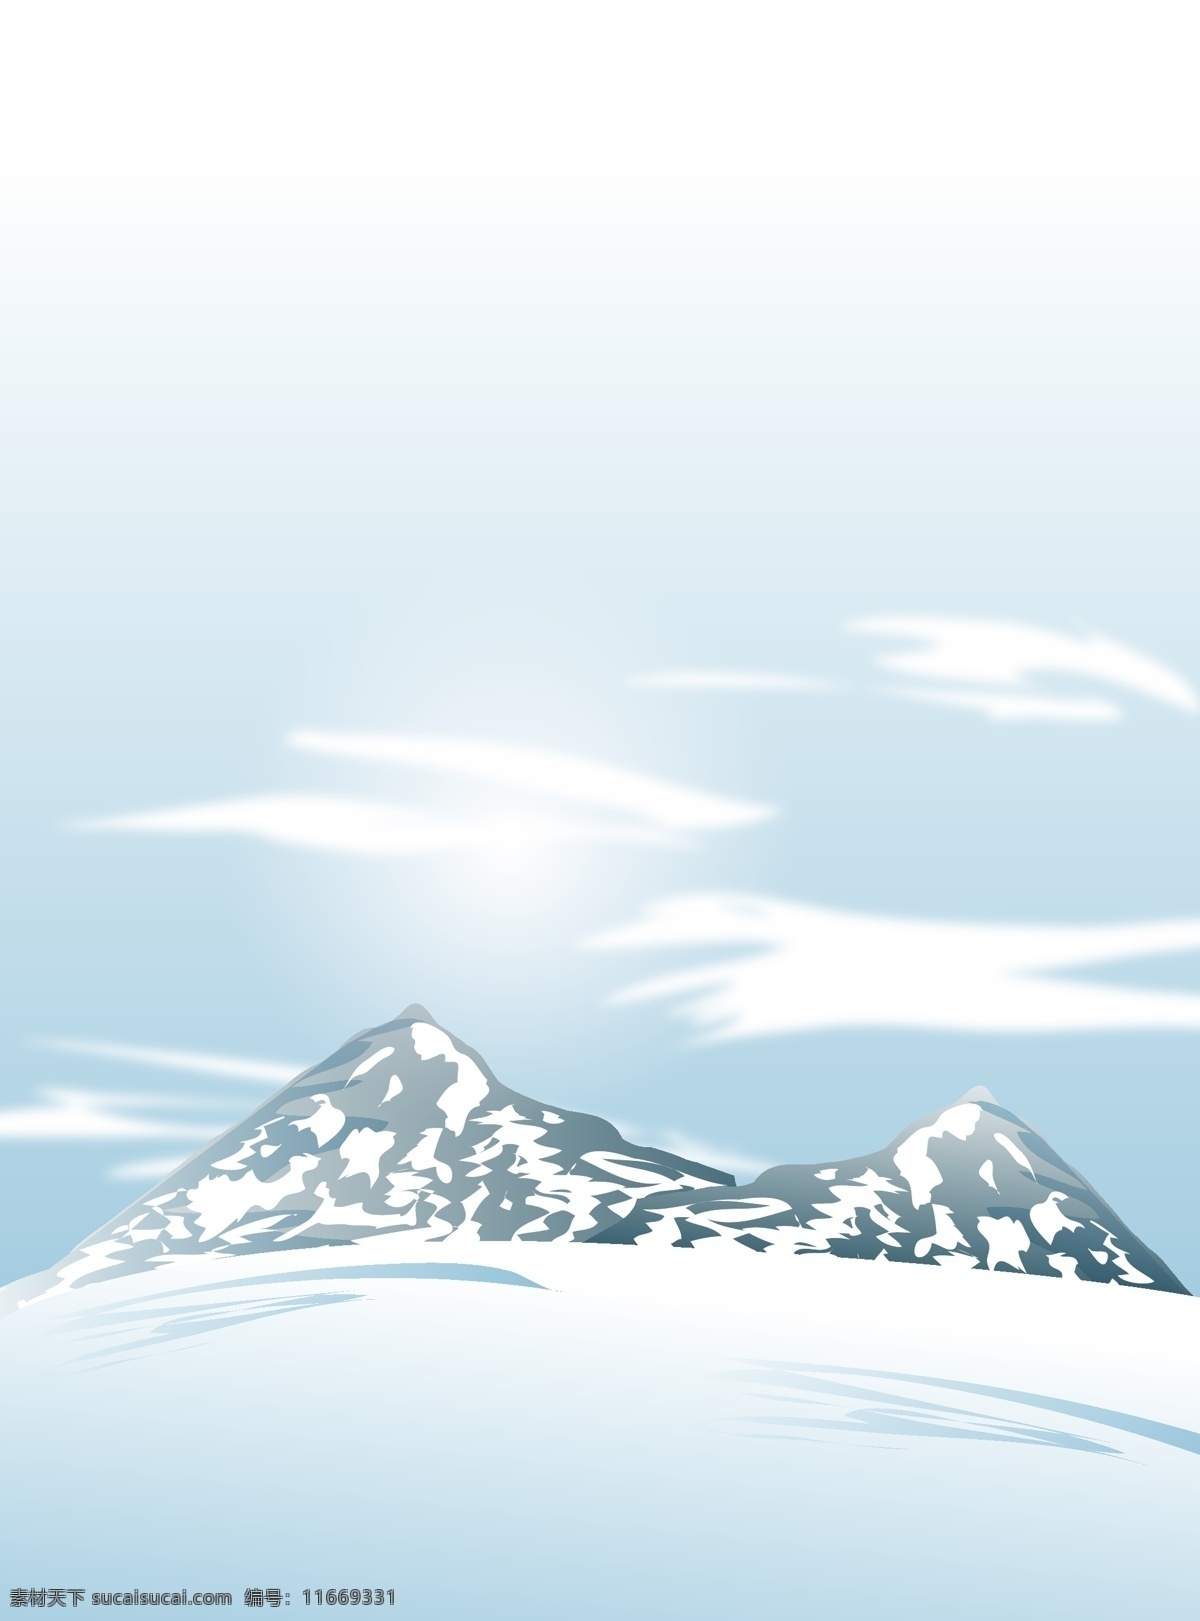 矢量 卡通 文艺 冬季 雪山 背景 淡色 蓝色 云雾 海报 童趣 手绘